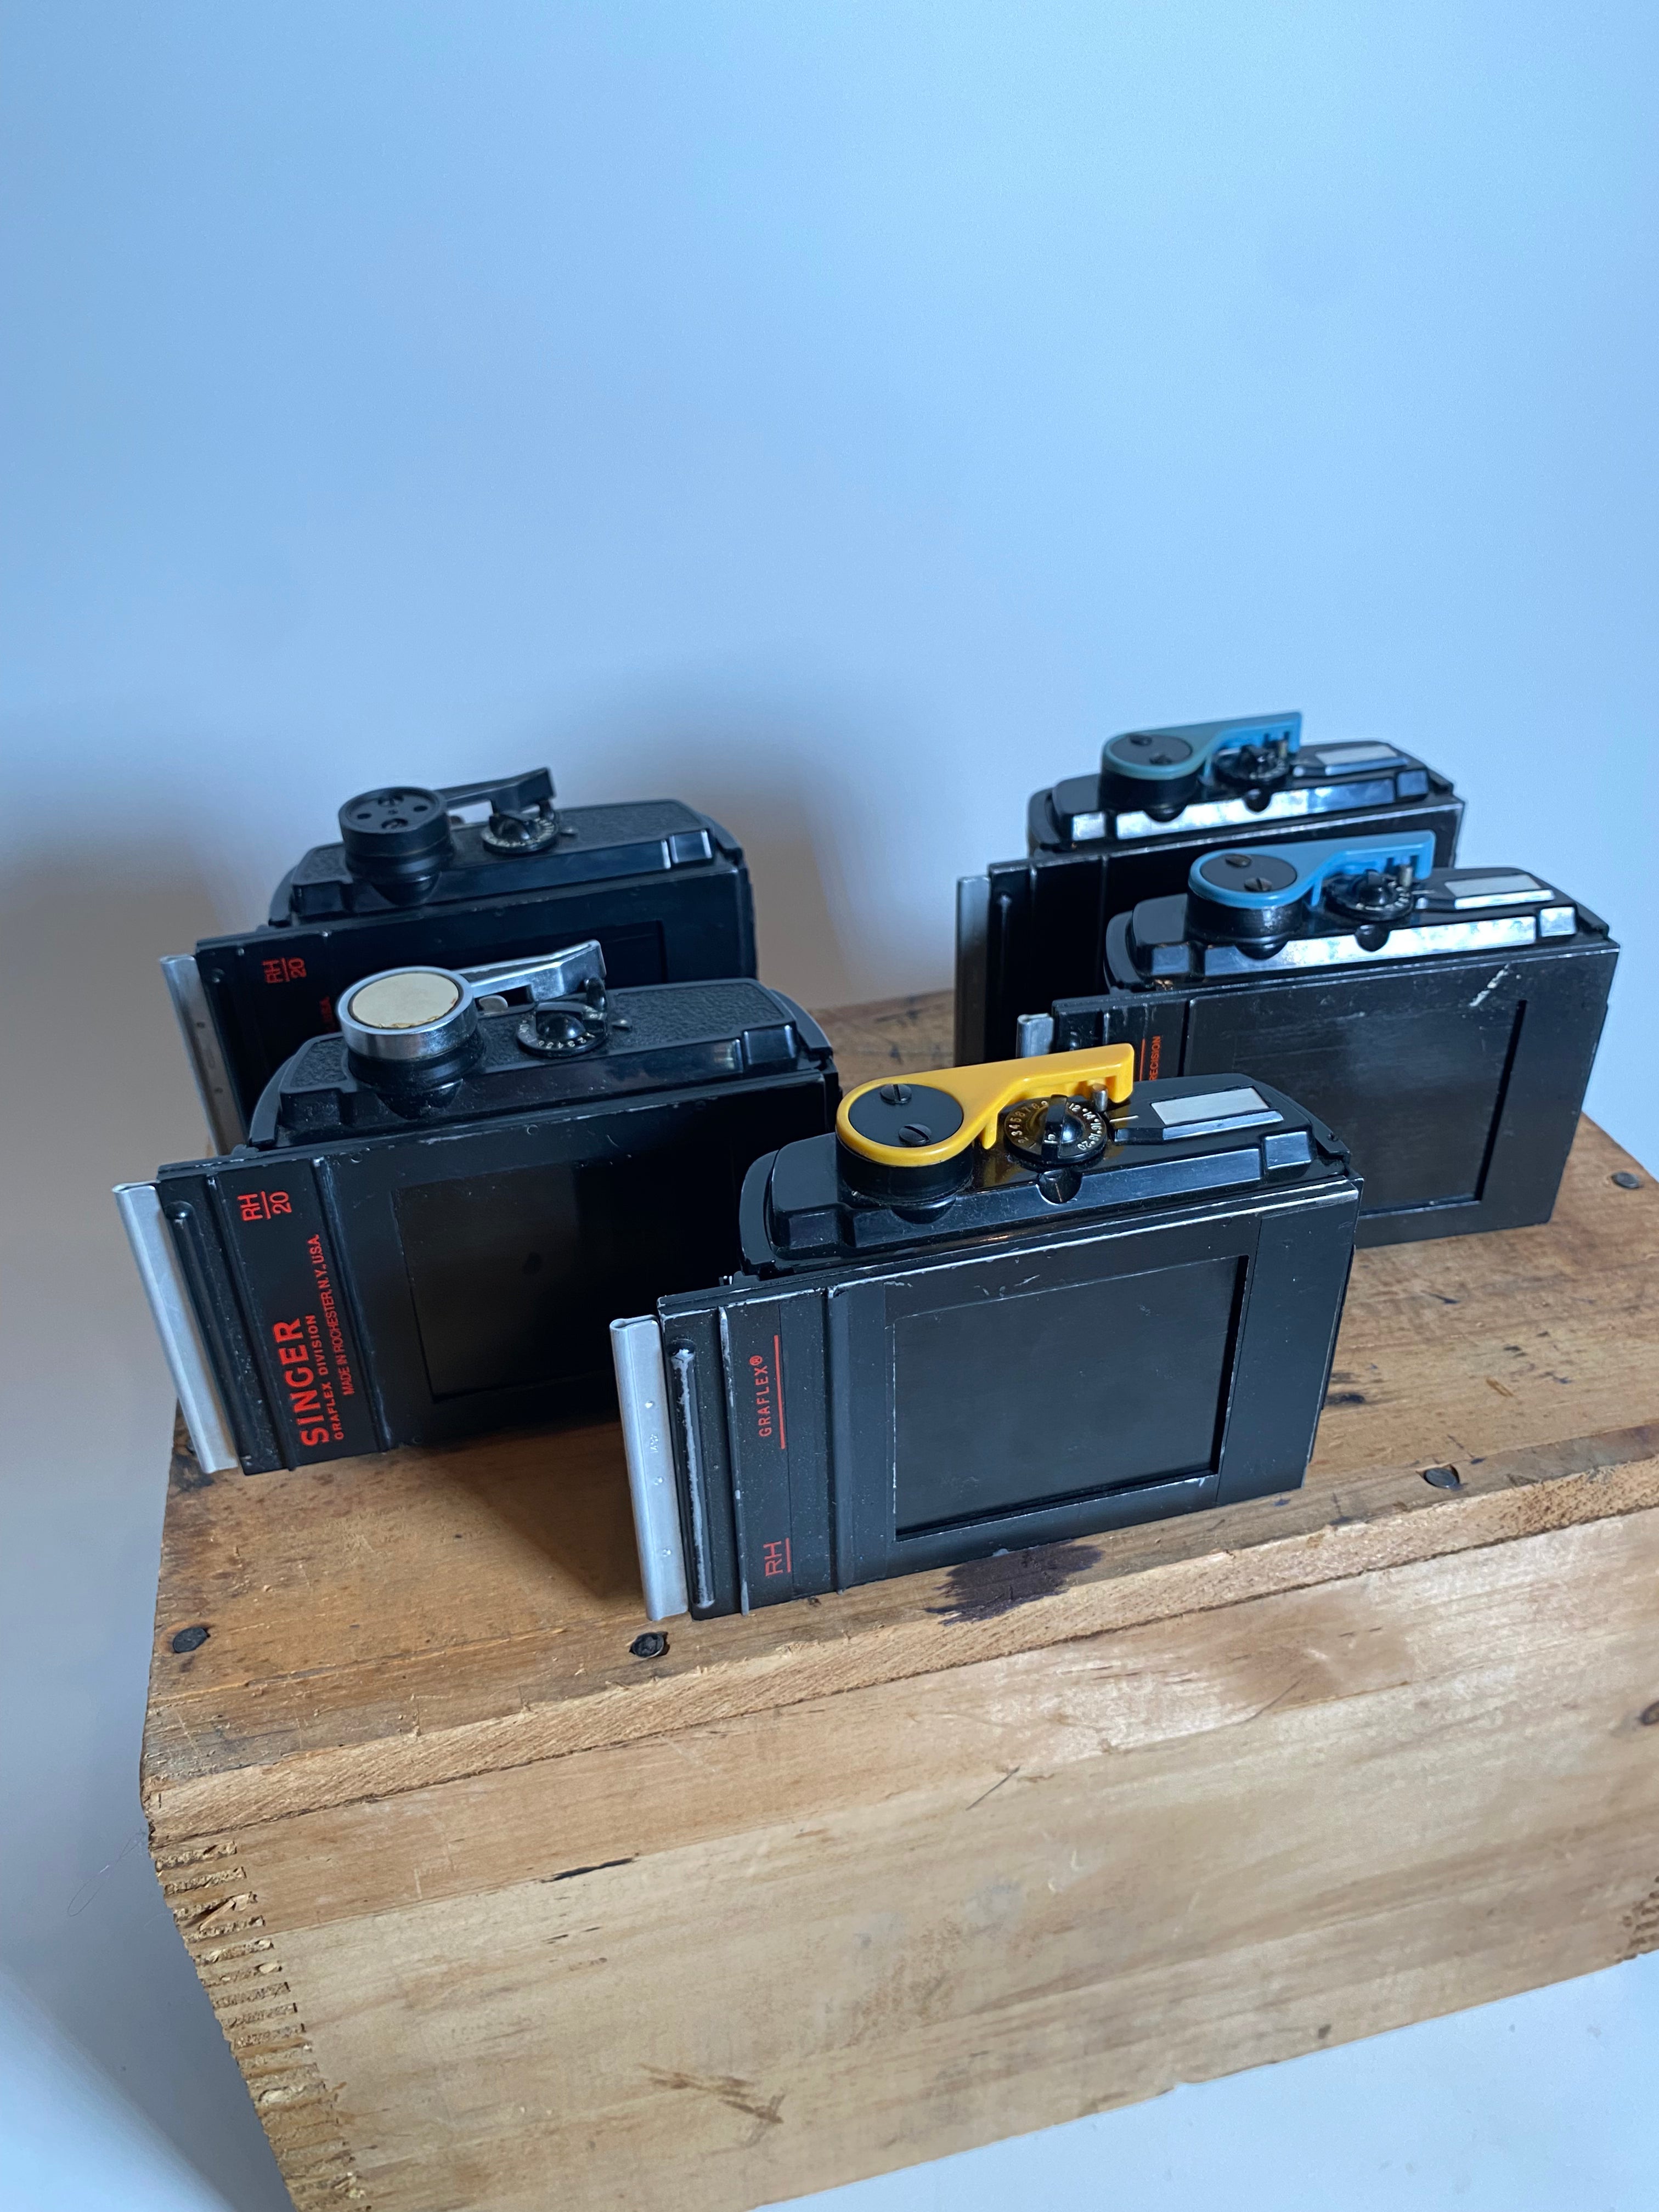 Graflex XL – Norwich Camera Company